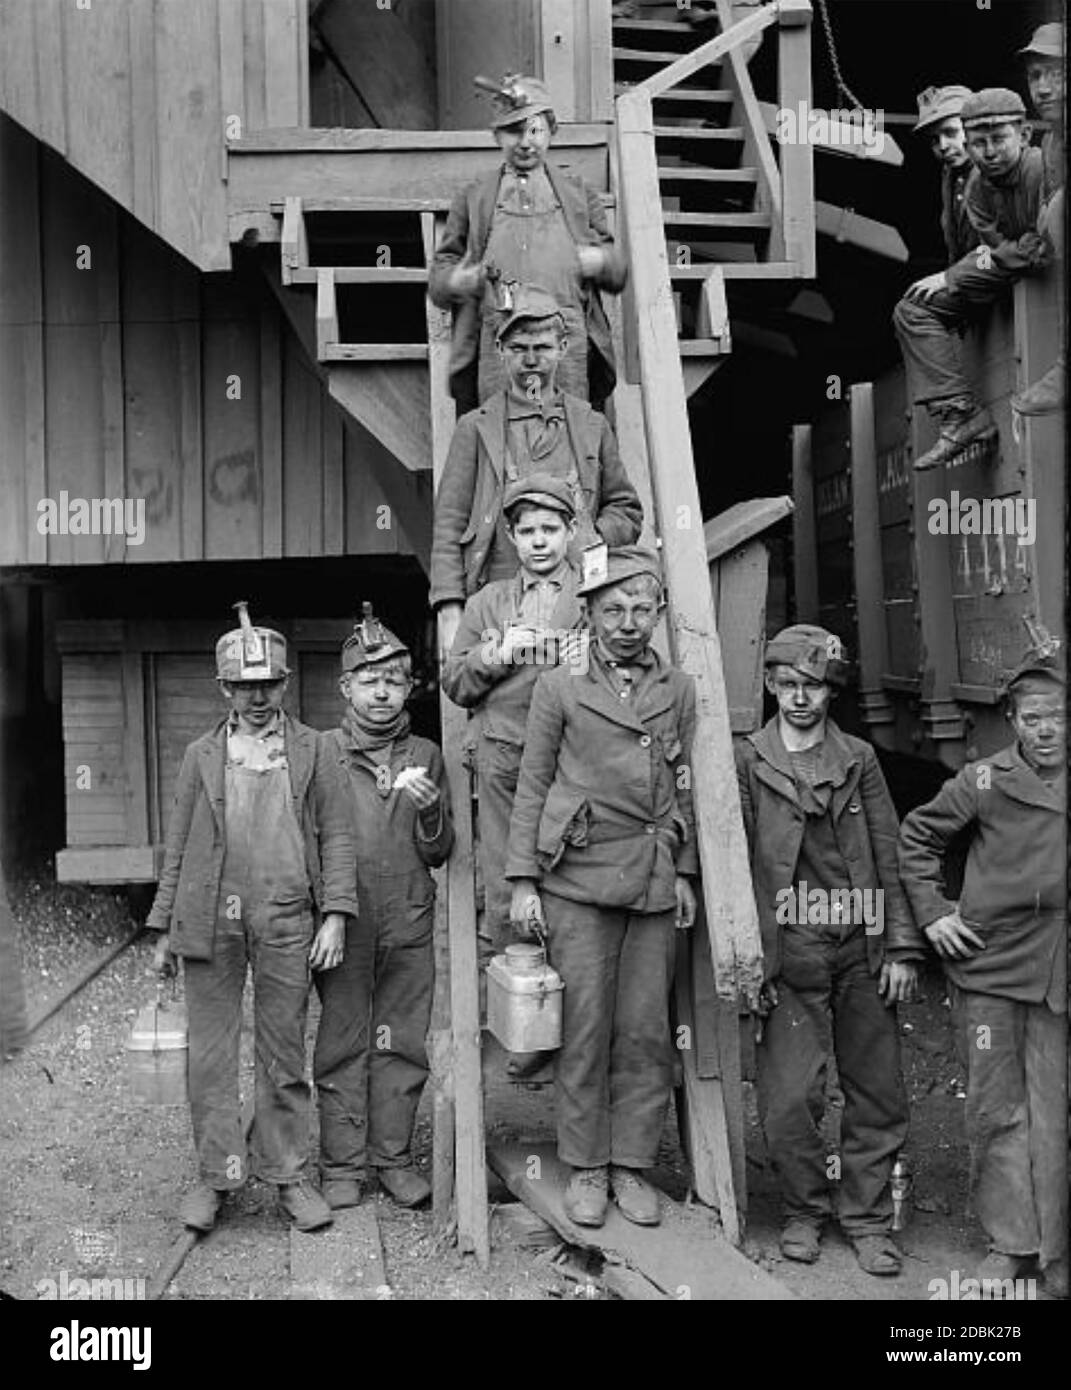 BREAKER BOYS à la mine de charbon Woodward, Kingston, Pennsylvanie, vers 1900. Ceux avec des phares sont peut-être des conducteurs mules, ceux sur la droite ceux qui ont effectivement trié le charbon. Photo: Lewis Hine Banque D'Images